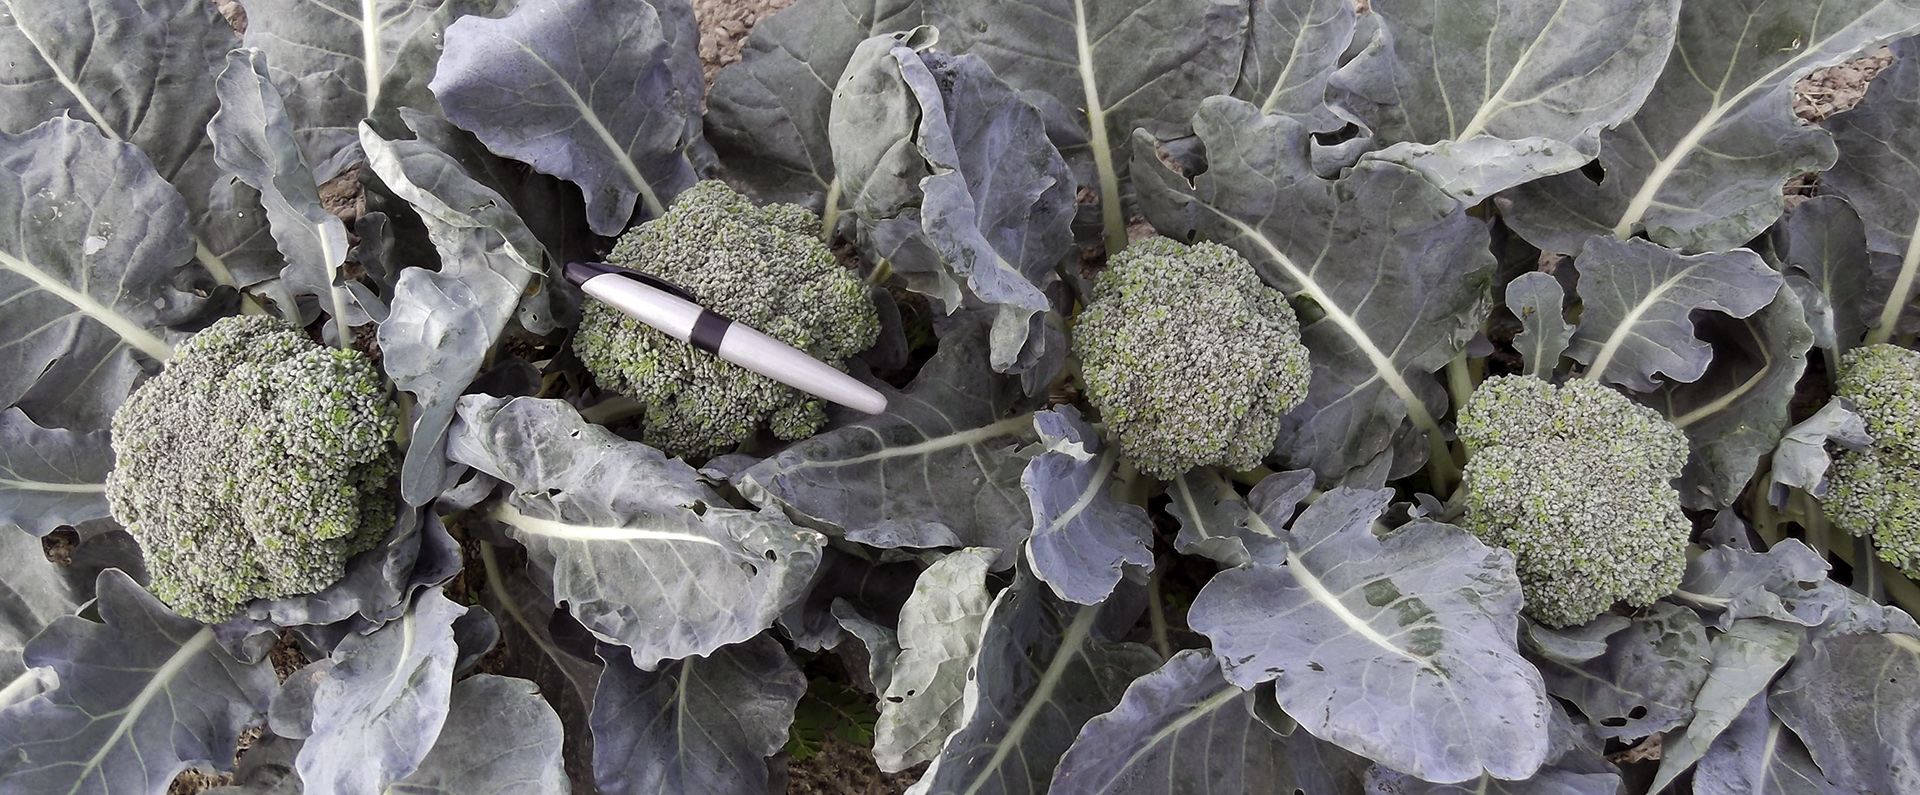 Heads of heat-tolerant broccoli growing 